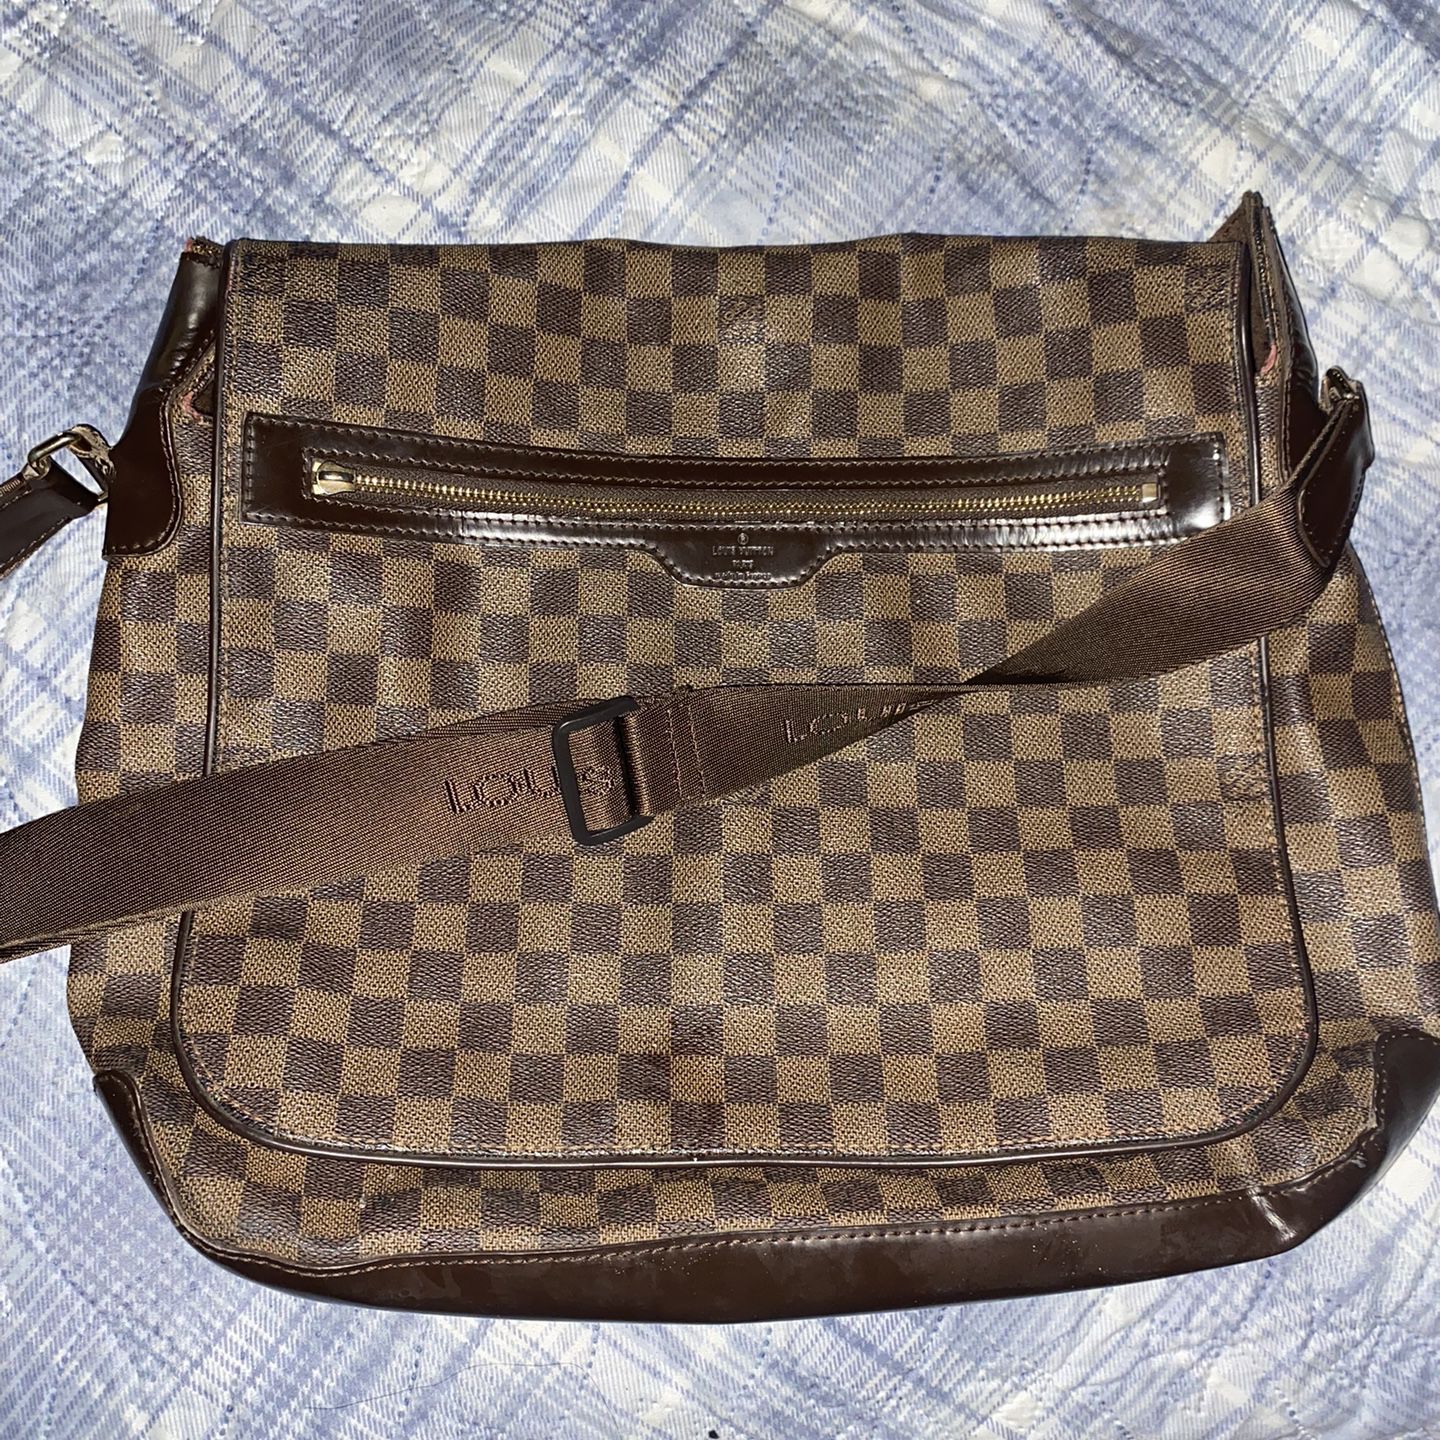 Louis Vuitton Vintage - Damier Ebene Spencer Bag - Brown - Leather